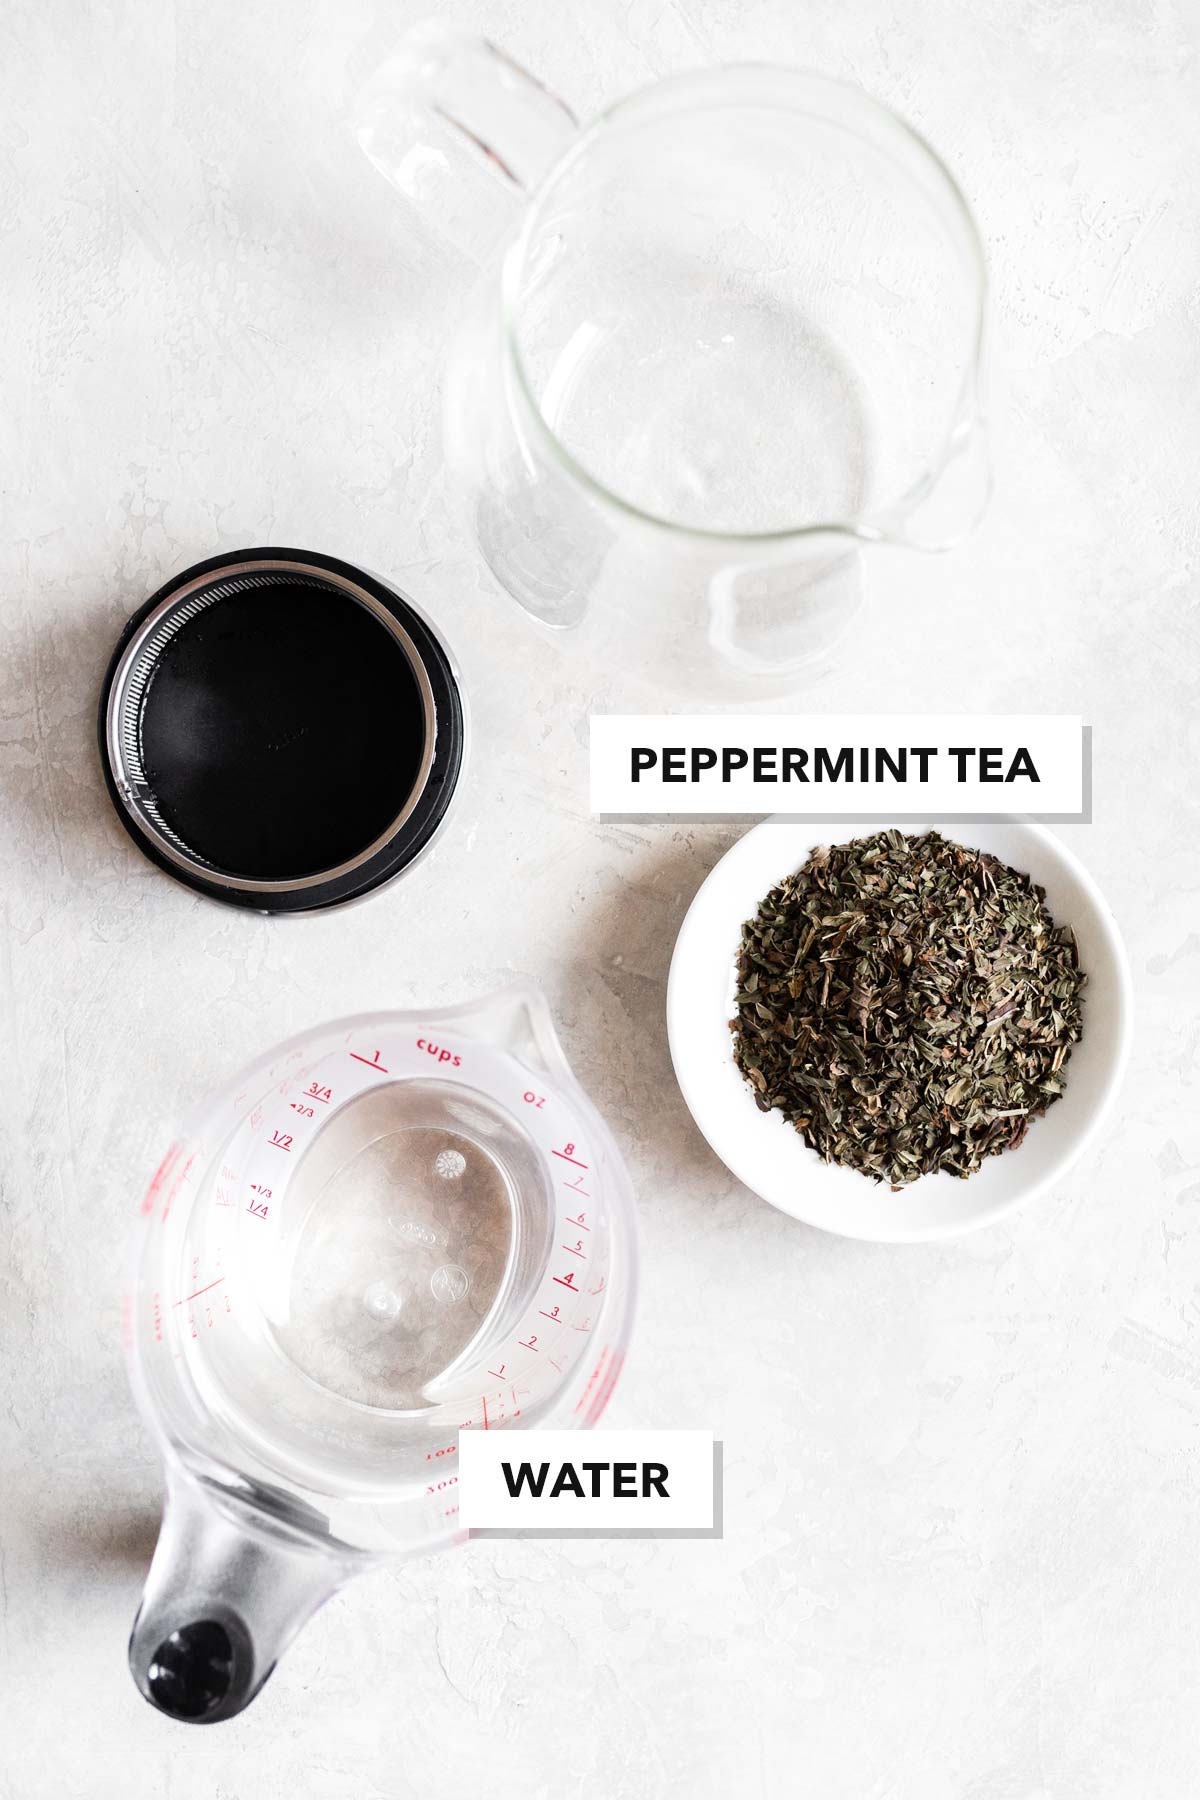 Peppermint tea ingredients.